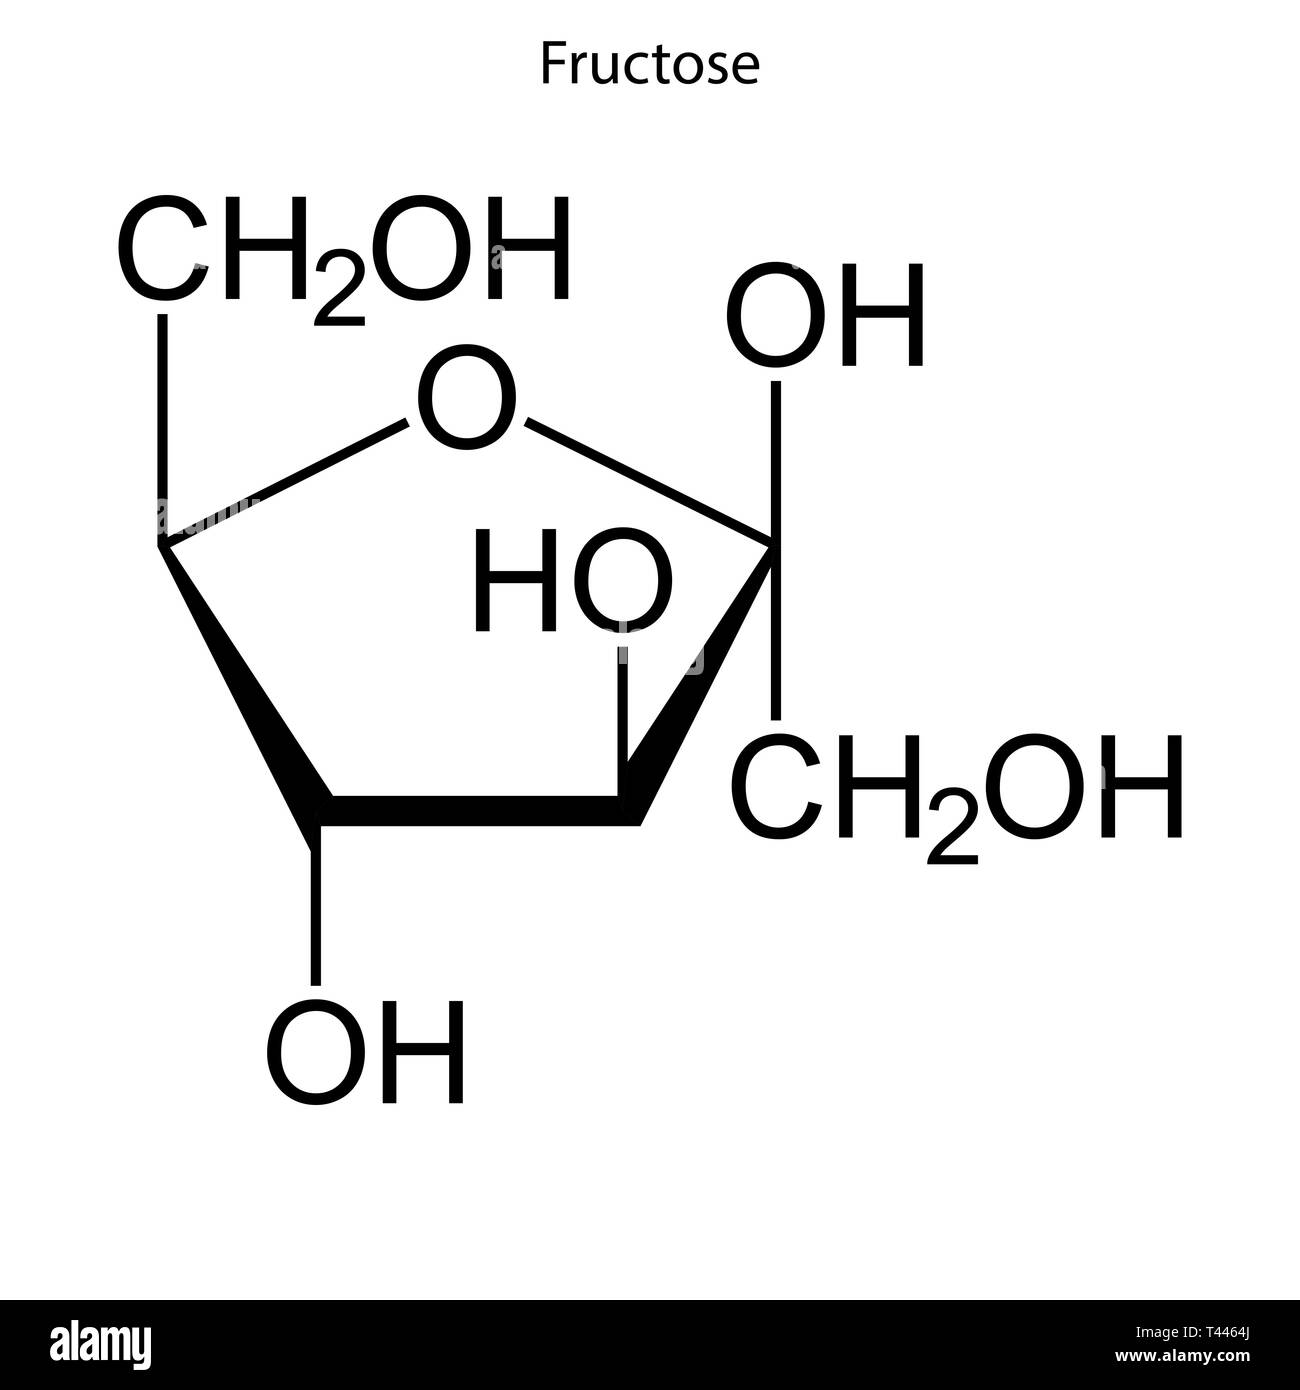 https://c8.alamy.com/comp/T4464J/skeletal-formula-of-fructose-chemical-molecule-T4464J.jpg